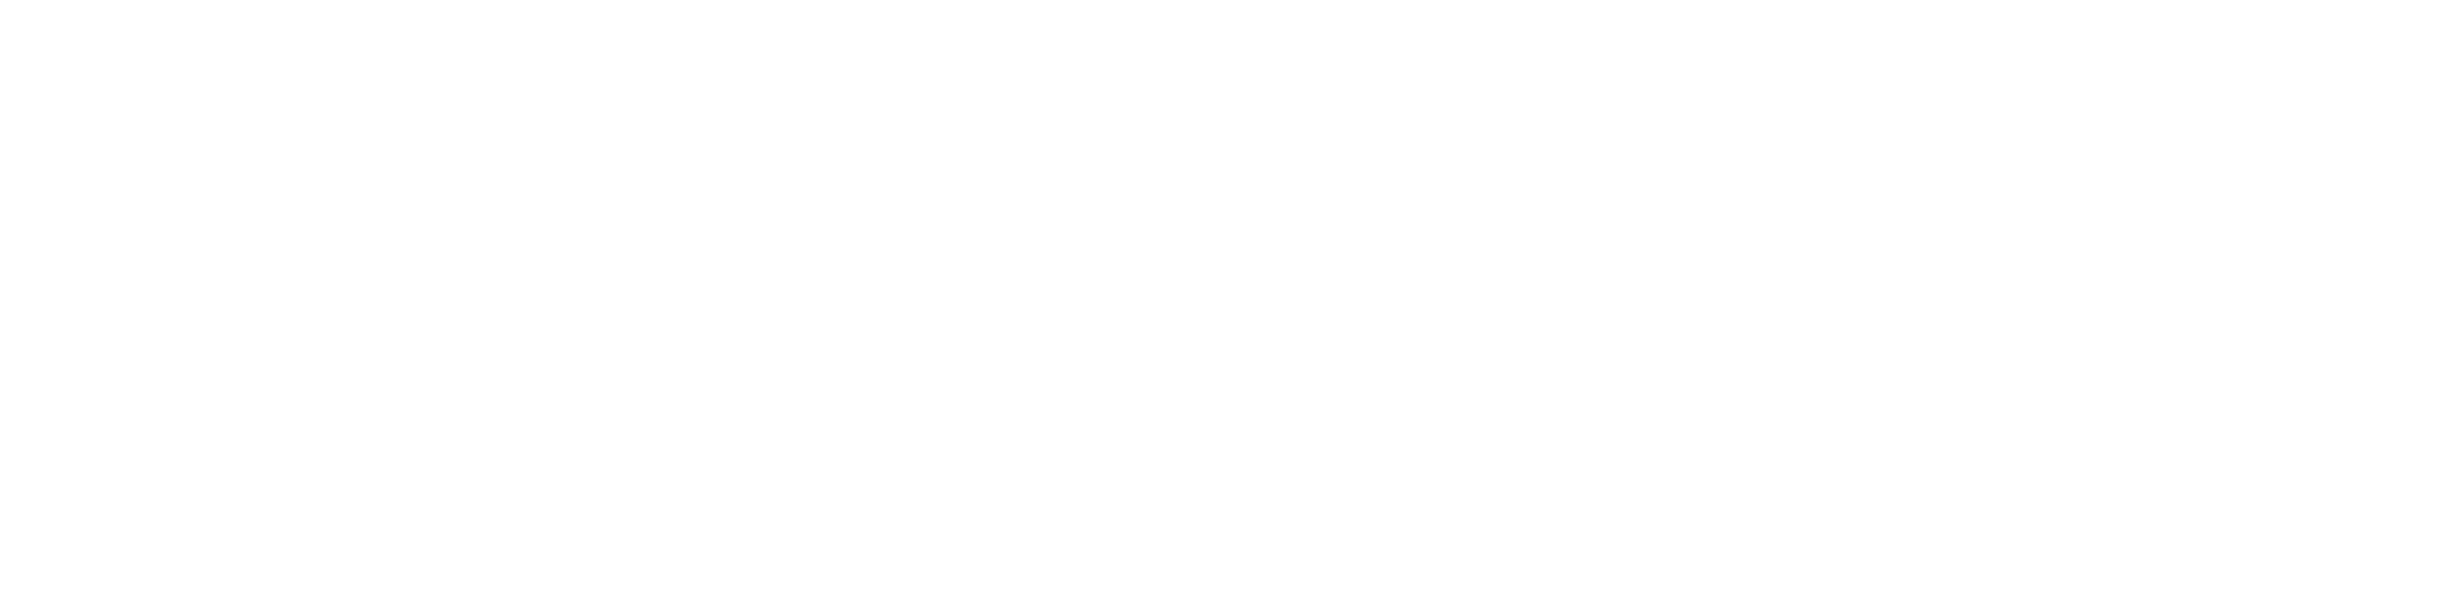 BestPlaceToWork Logo RGB_White